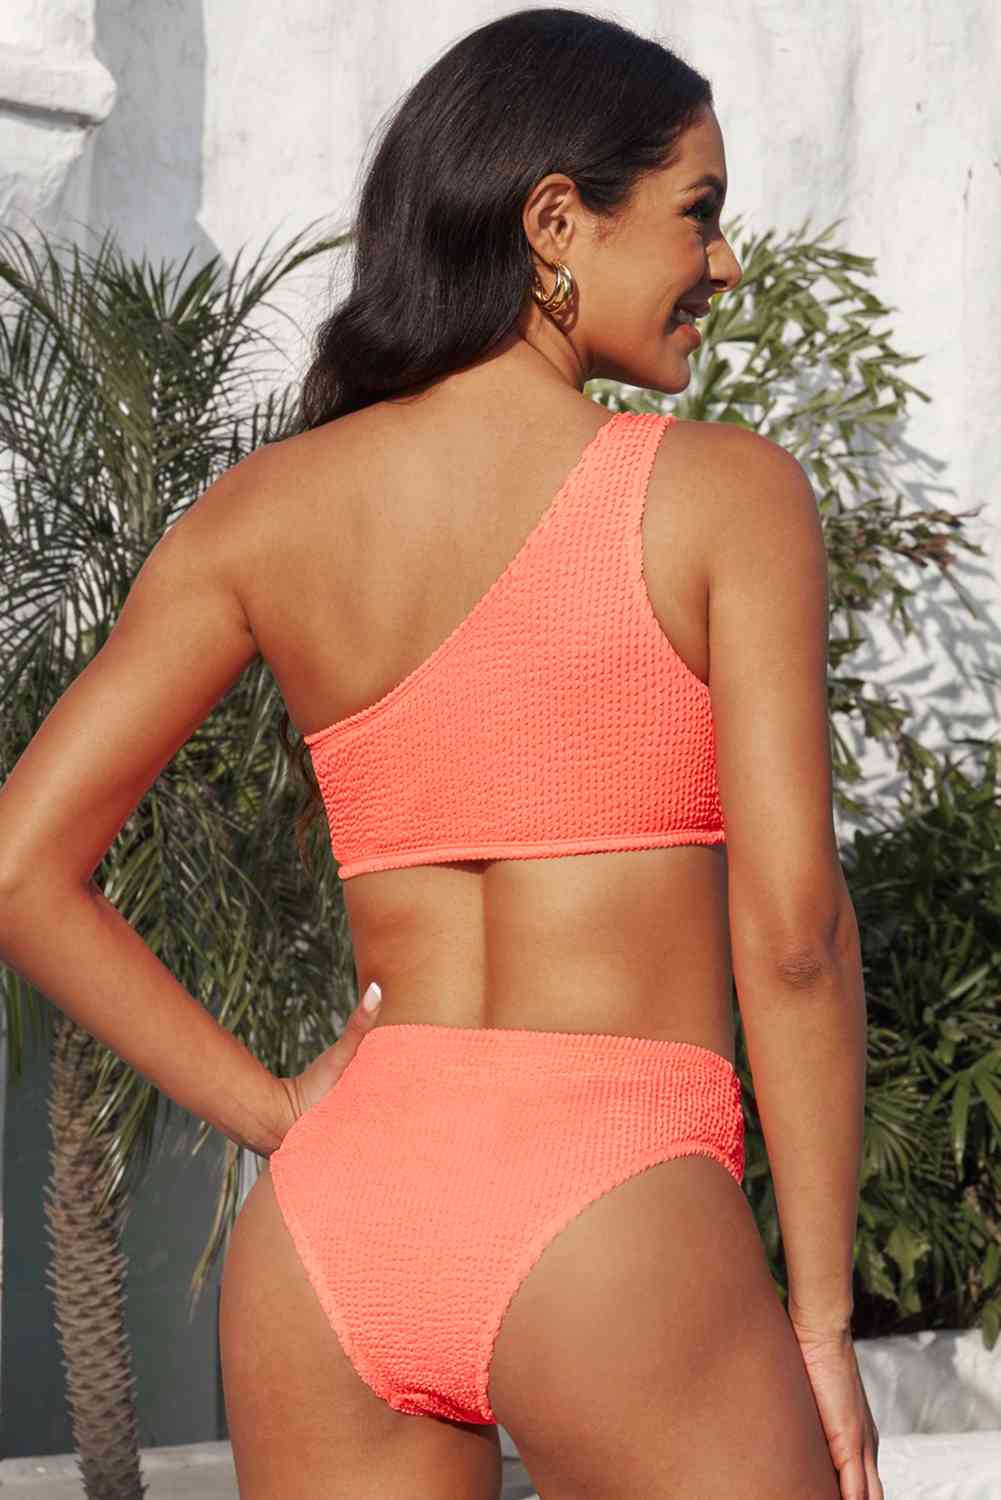 a woman in a bikini top and bottom